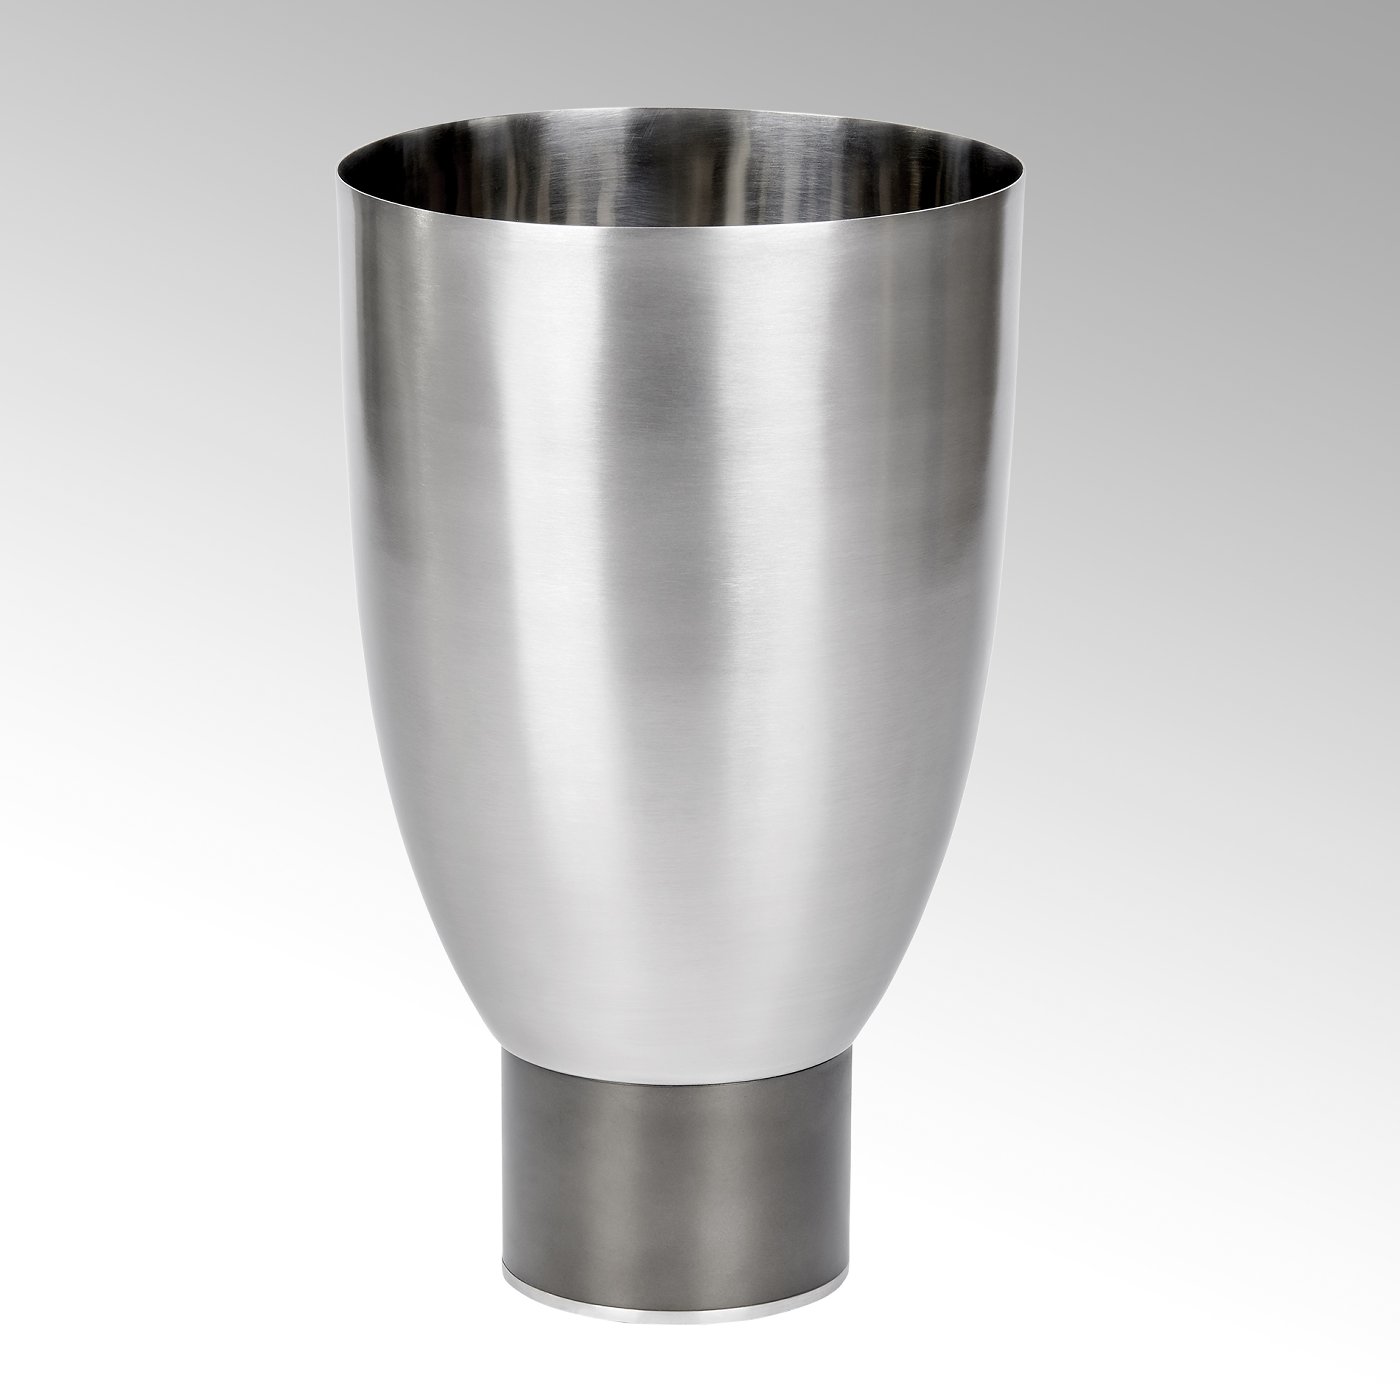 Oslo vase/vessel stainless steel